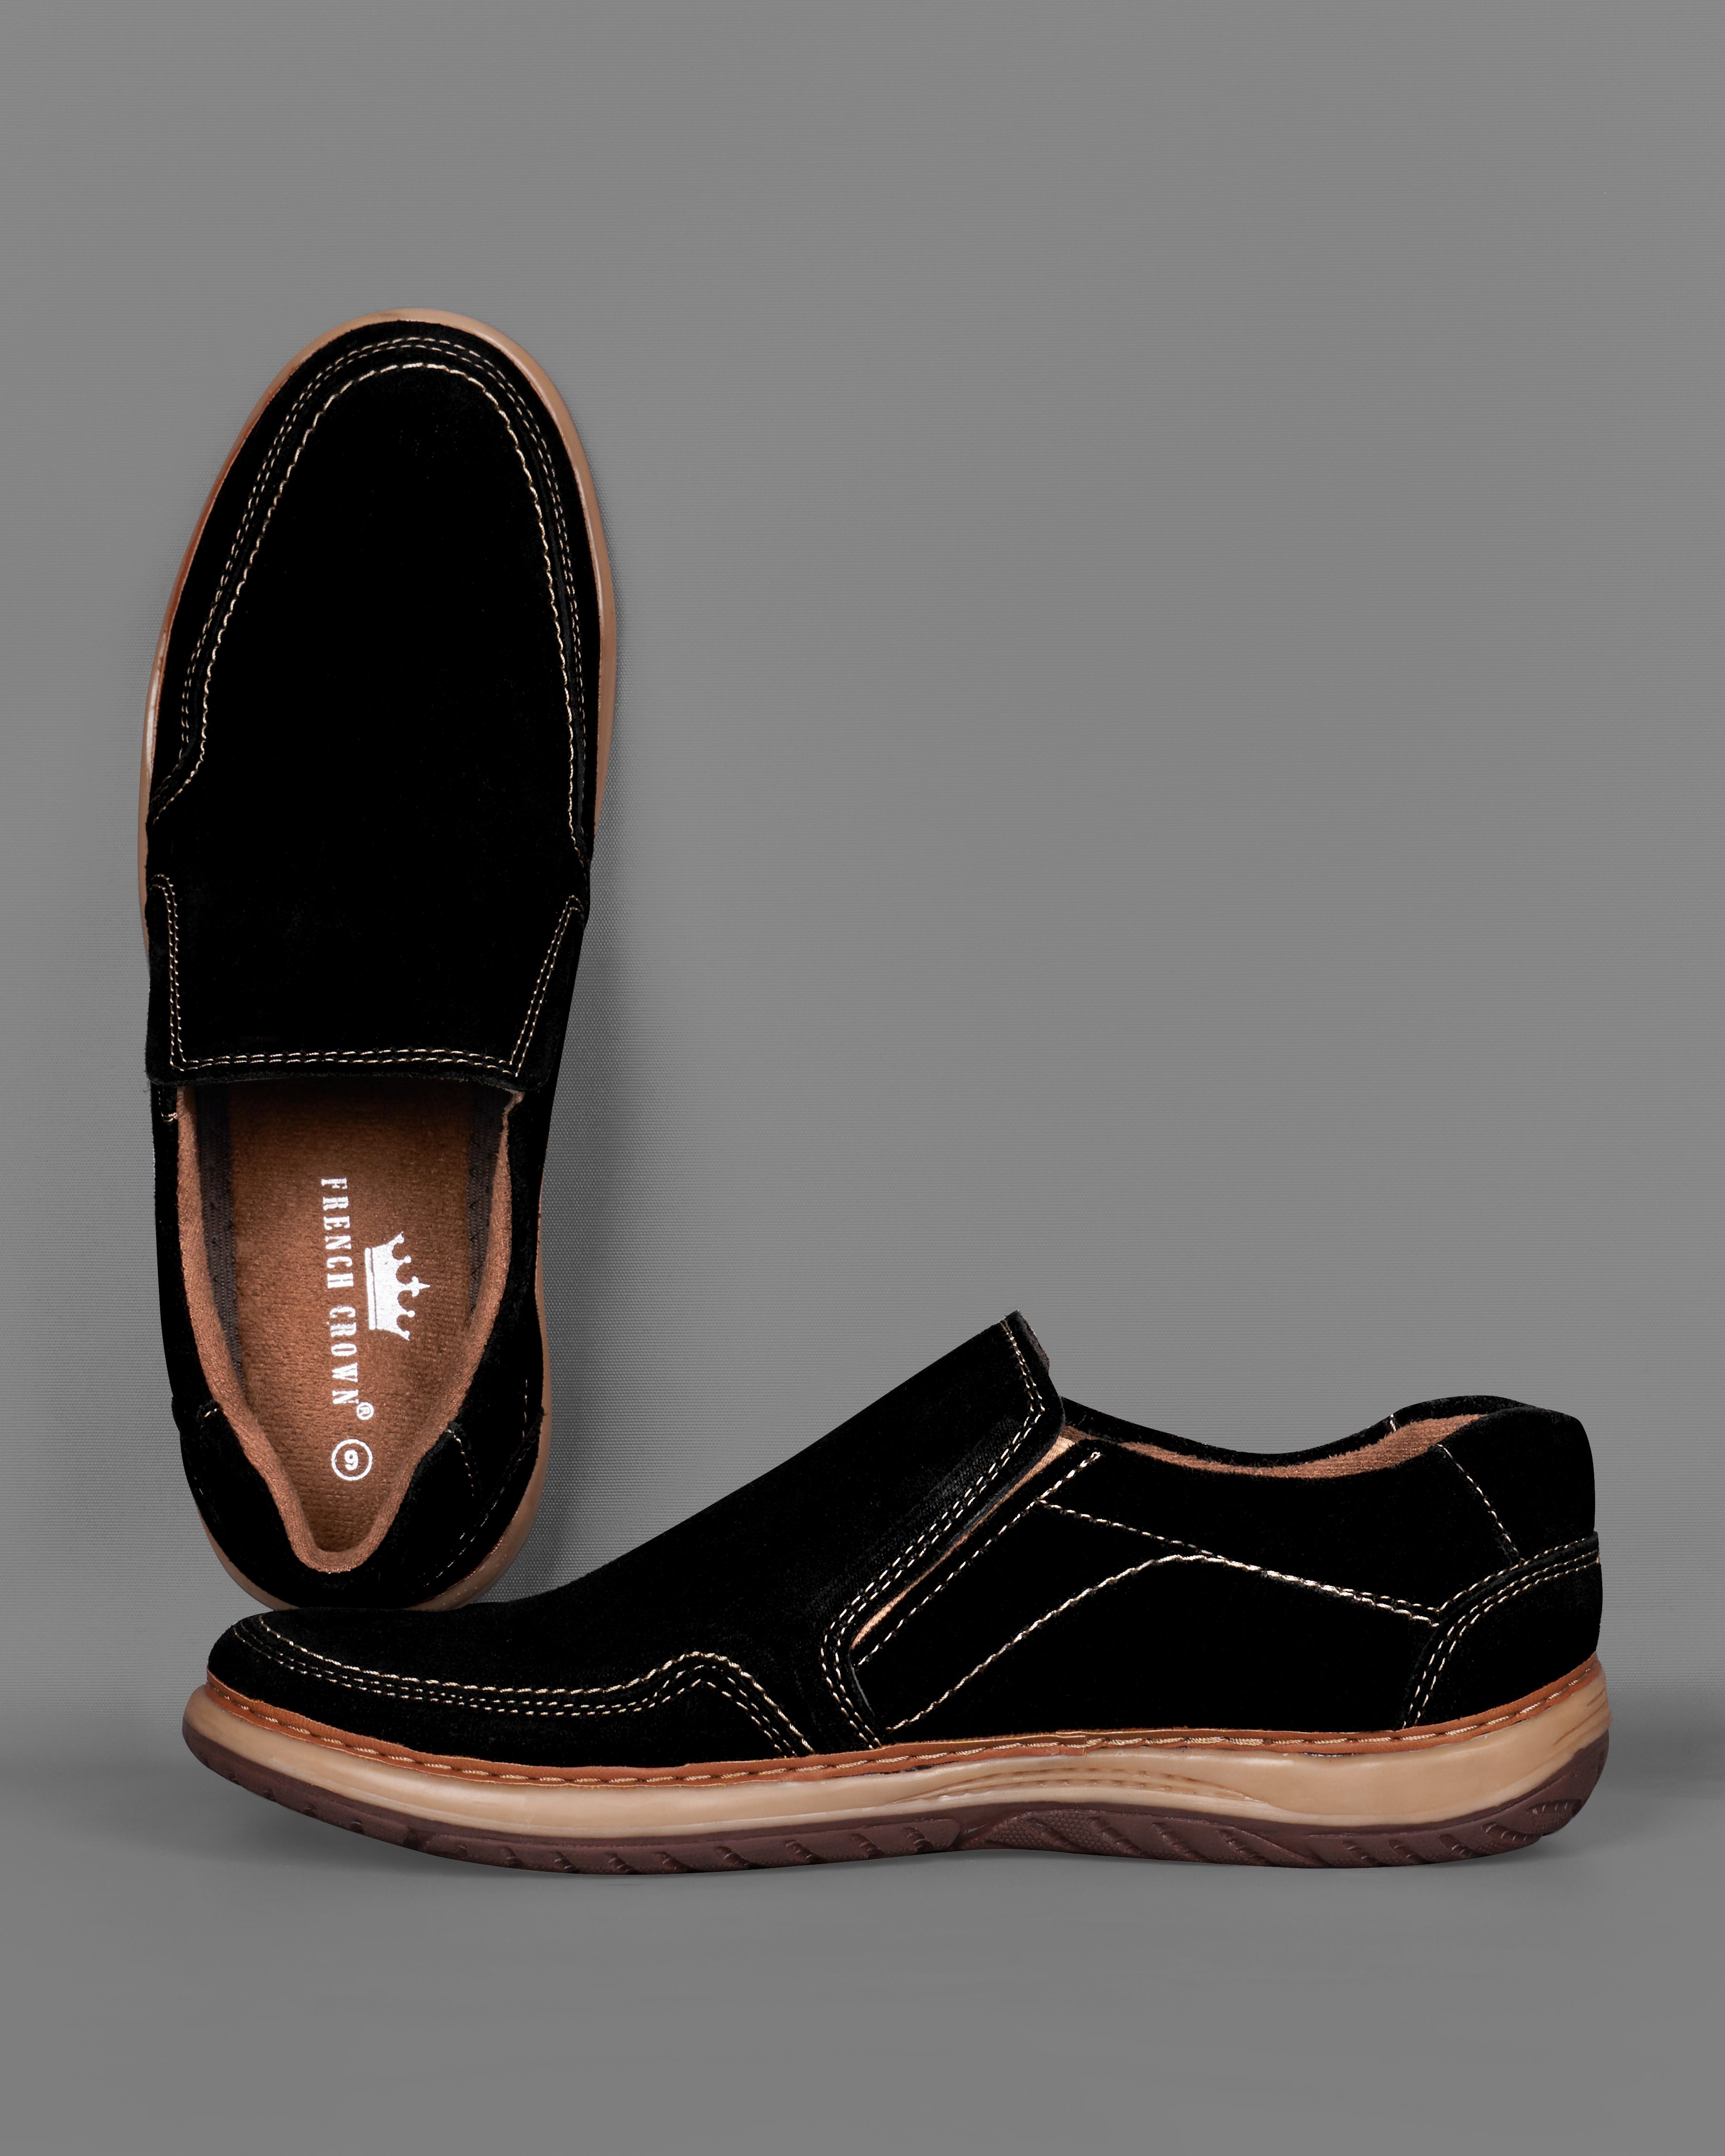 Jade Black Slip On Suede leather Shoes FT075-6, FT075-7, FT075-8, FT075-9, FT075-10, FT075-11